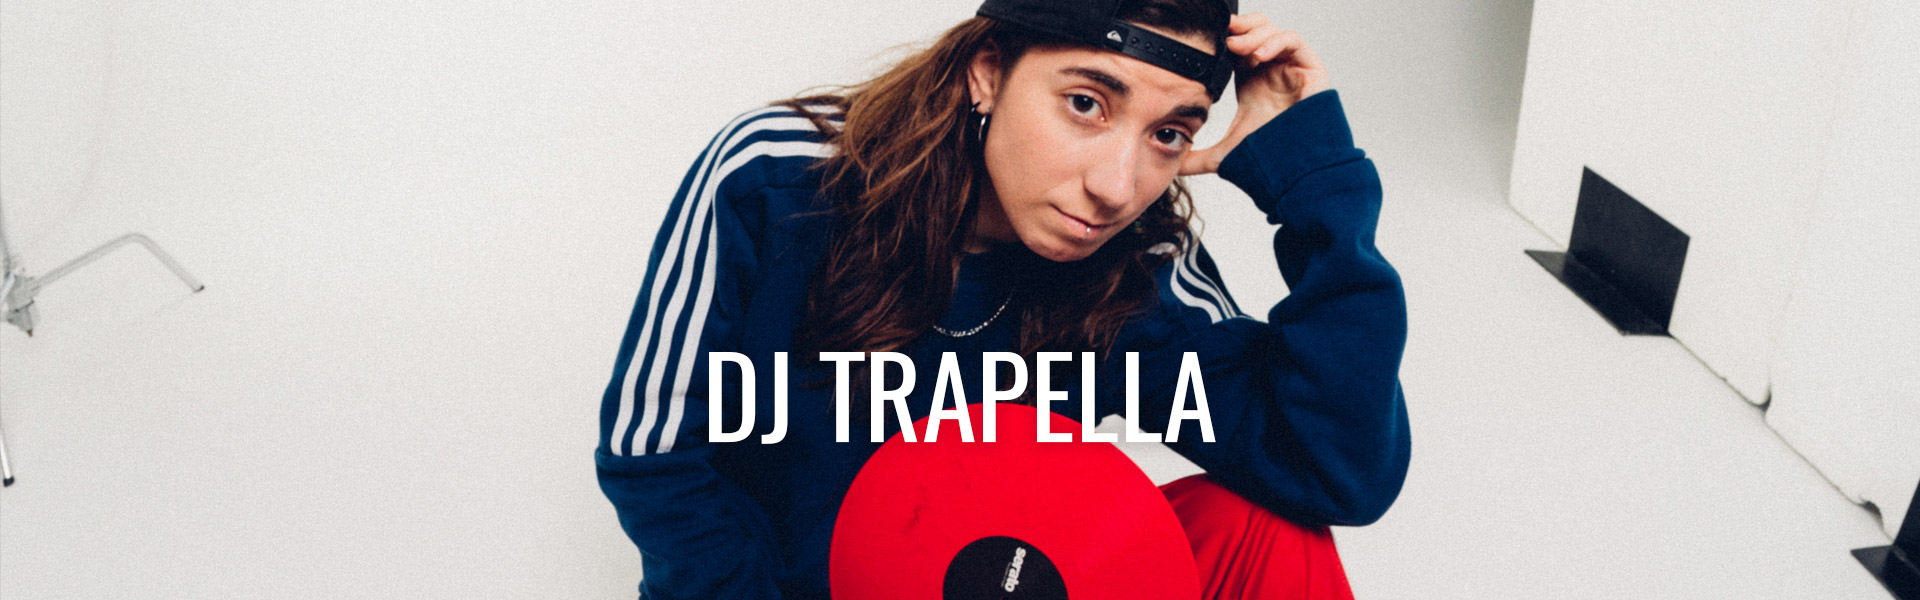 03-DJ-TRAPELLA